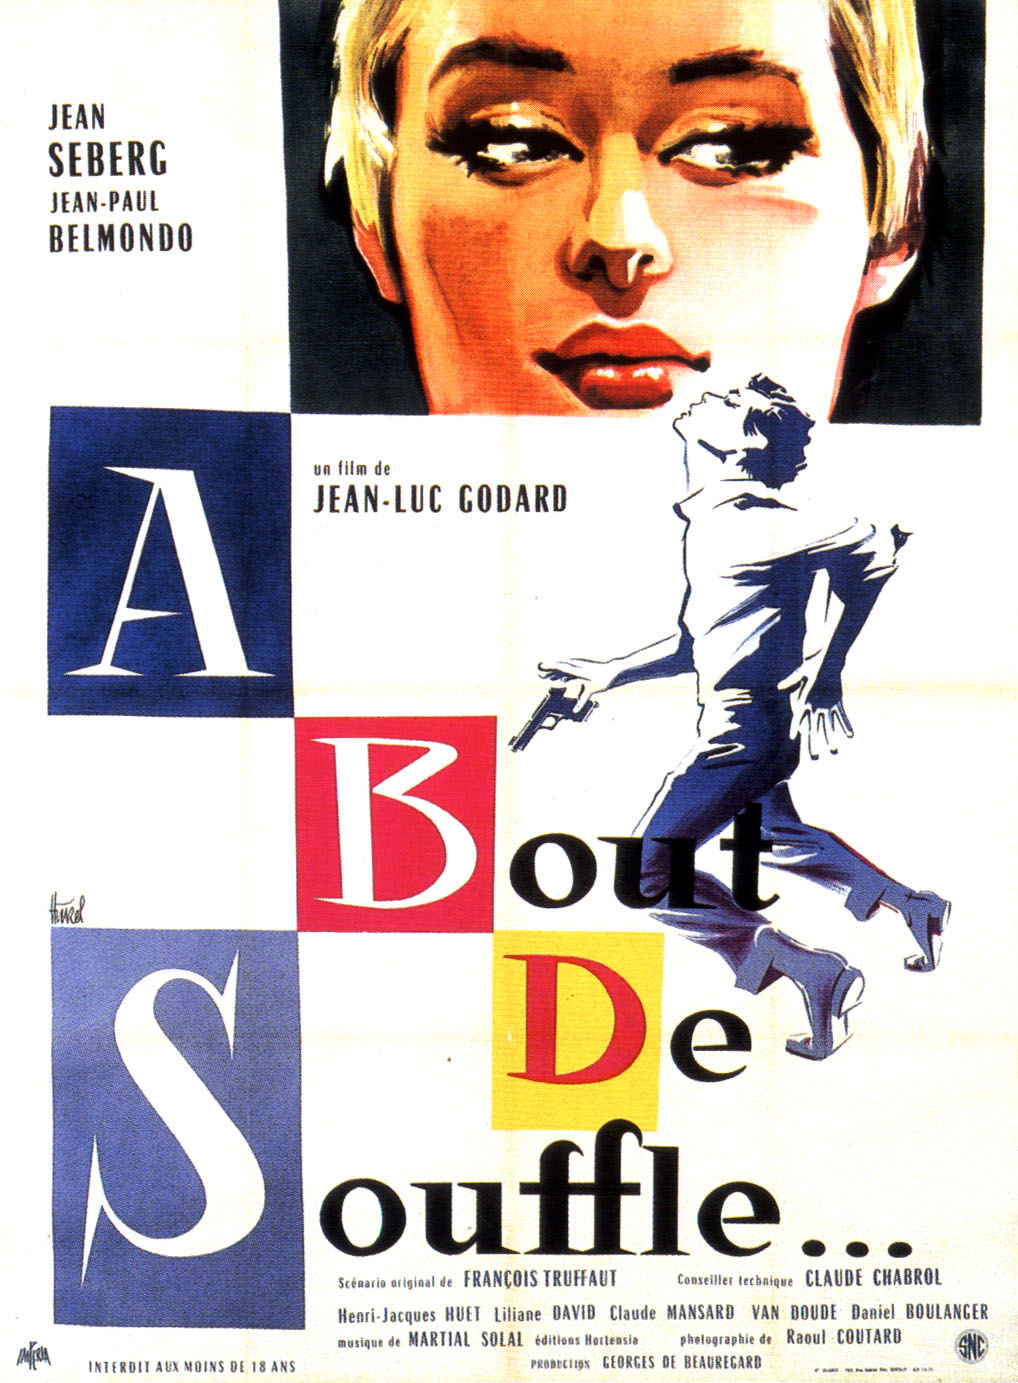 A BOUT DE SOUFFLE (1960)